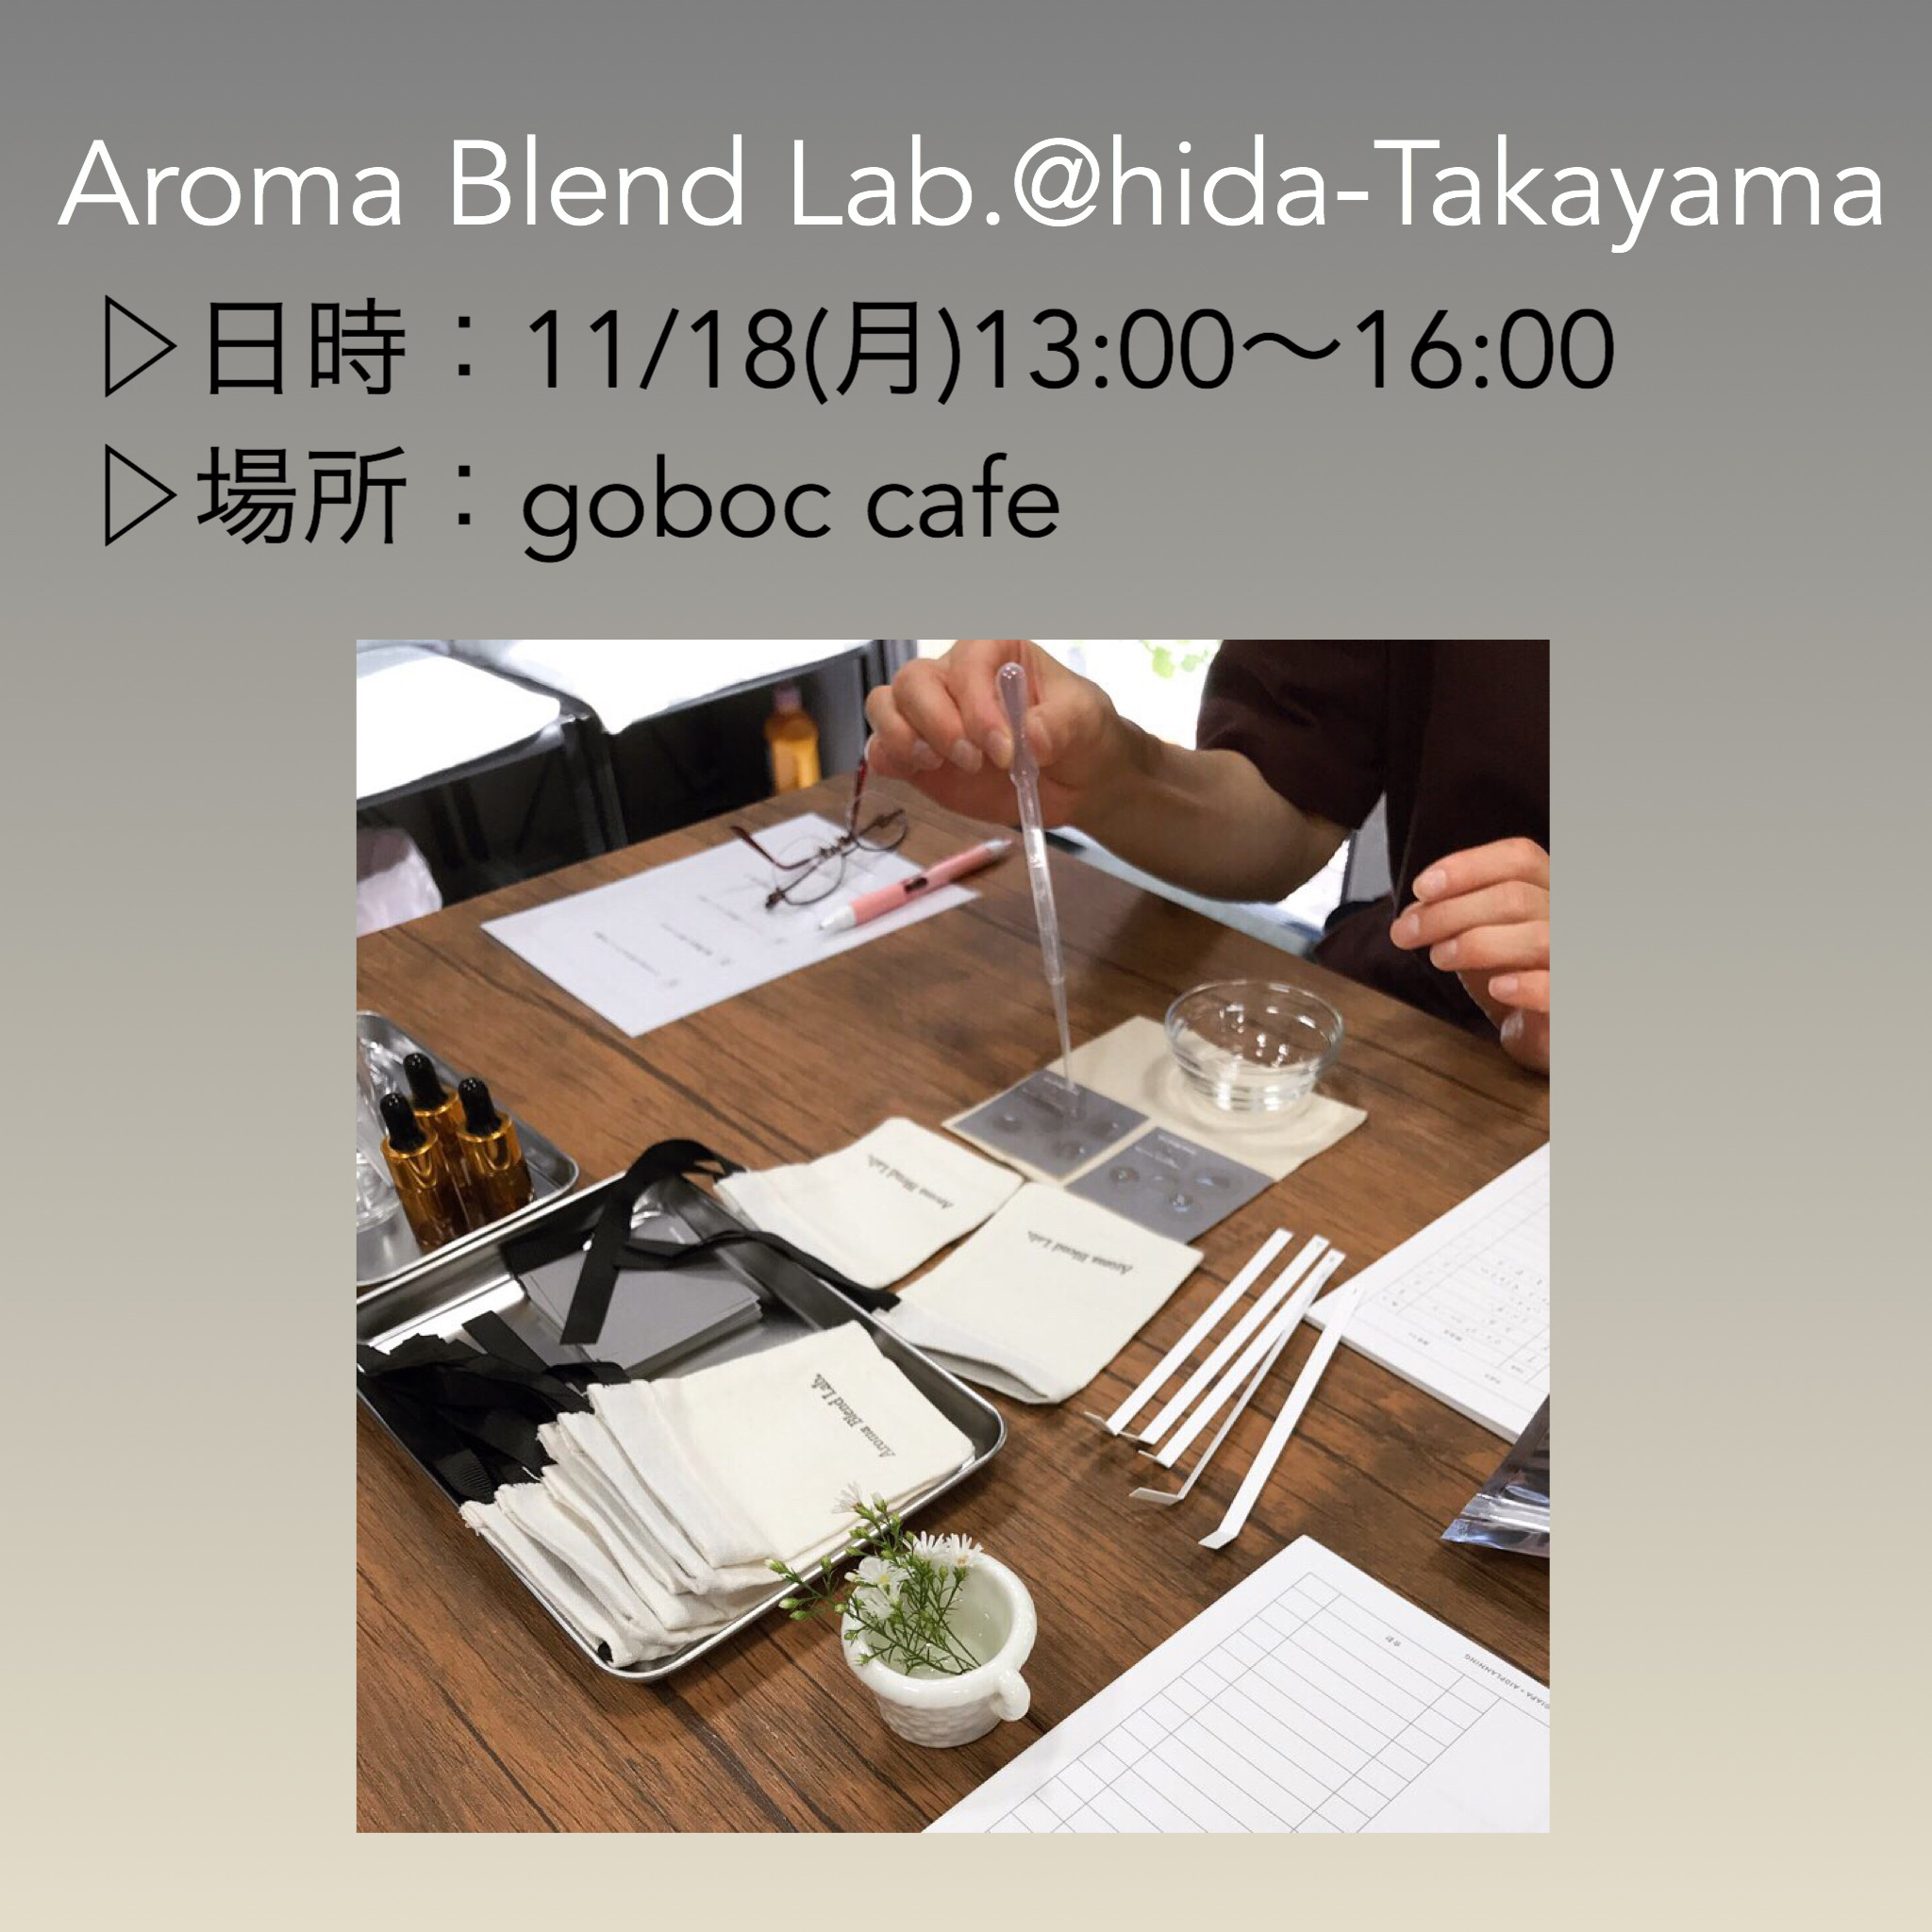 11/18(月)アロマ調香Lab.飛騨高山@goboc cafe